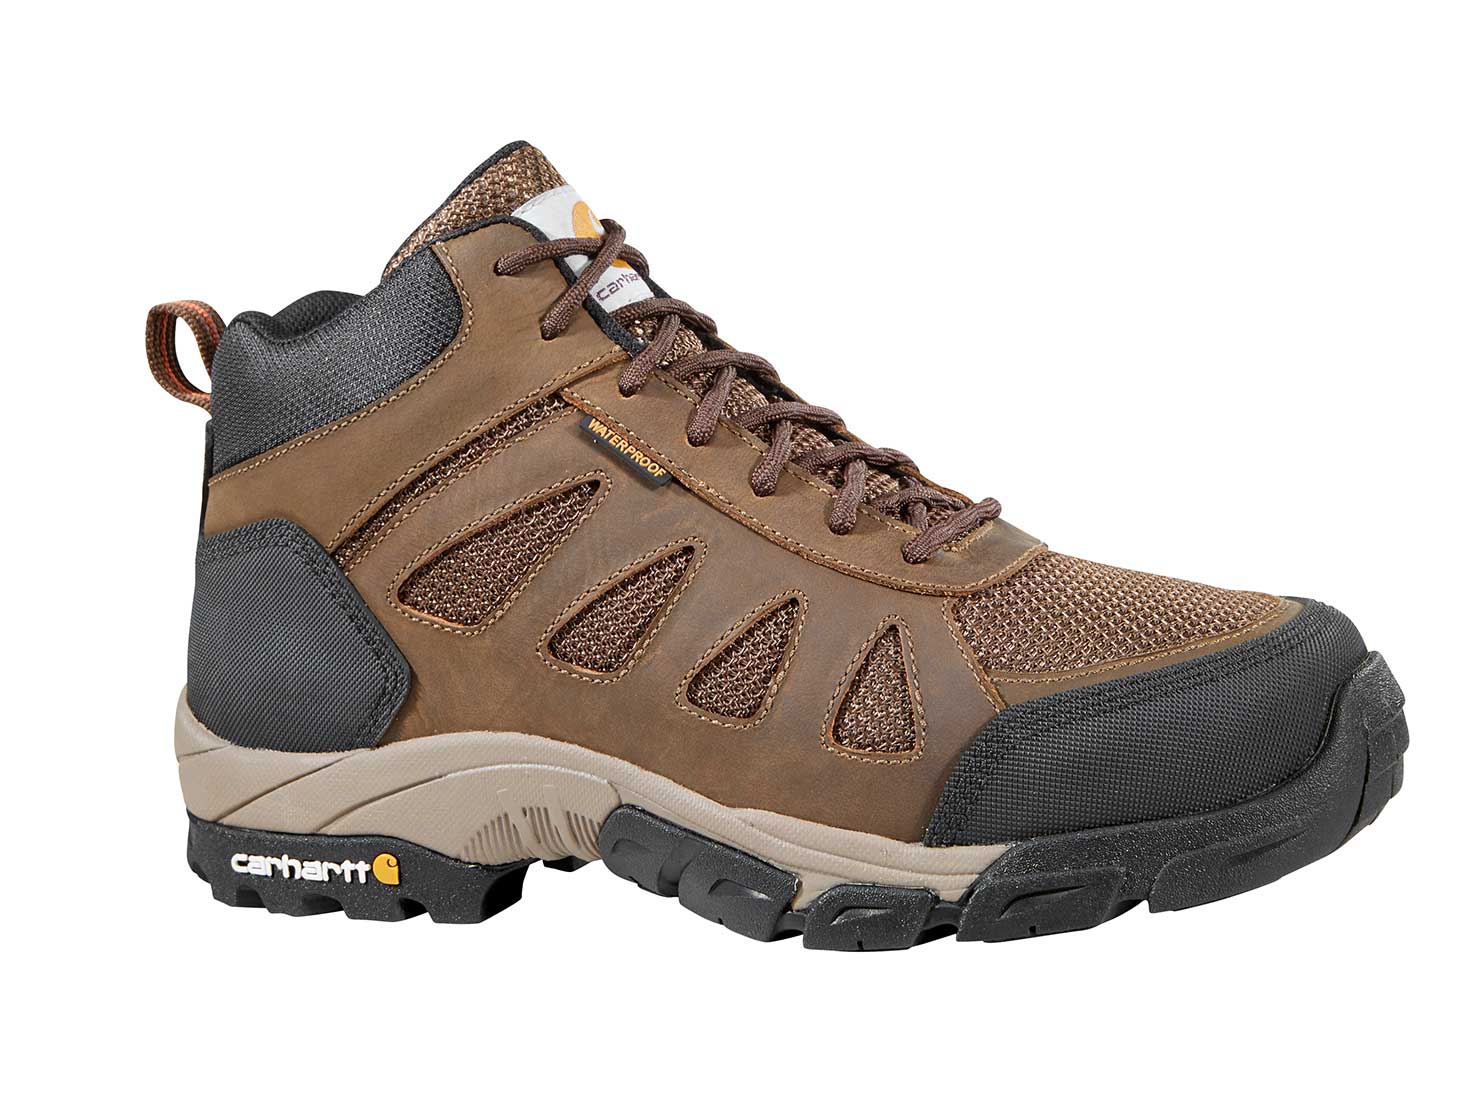 men's lightweight hiking boots